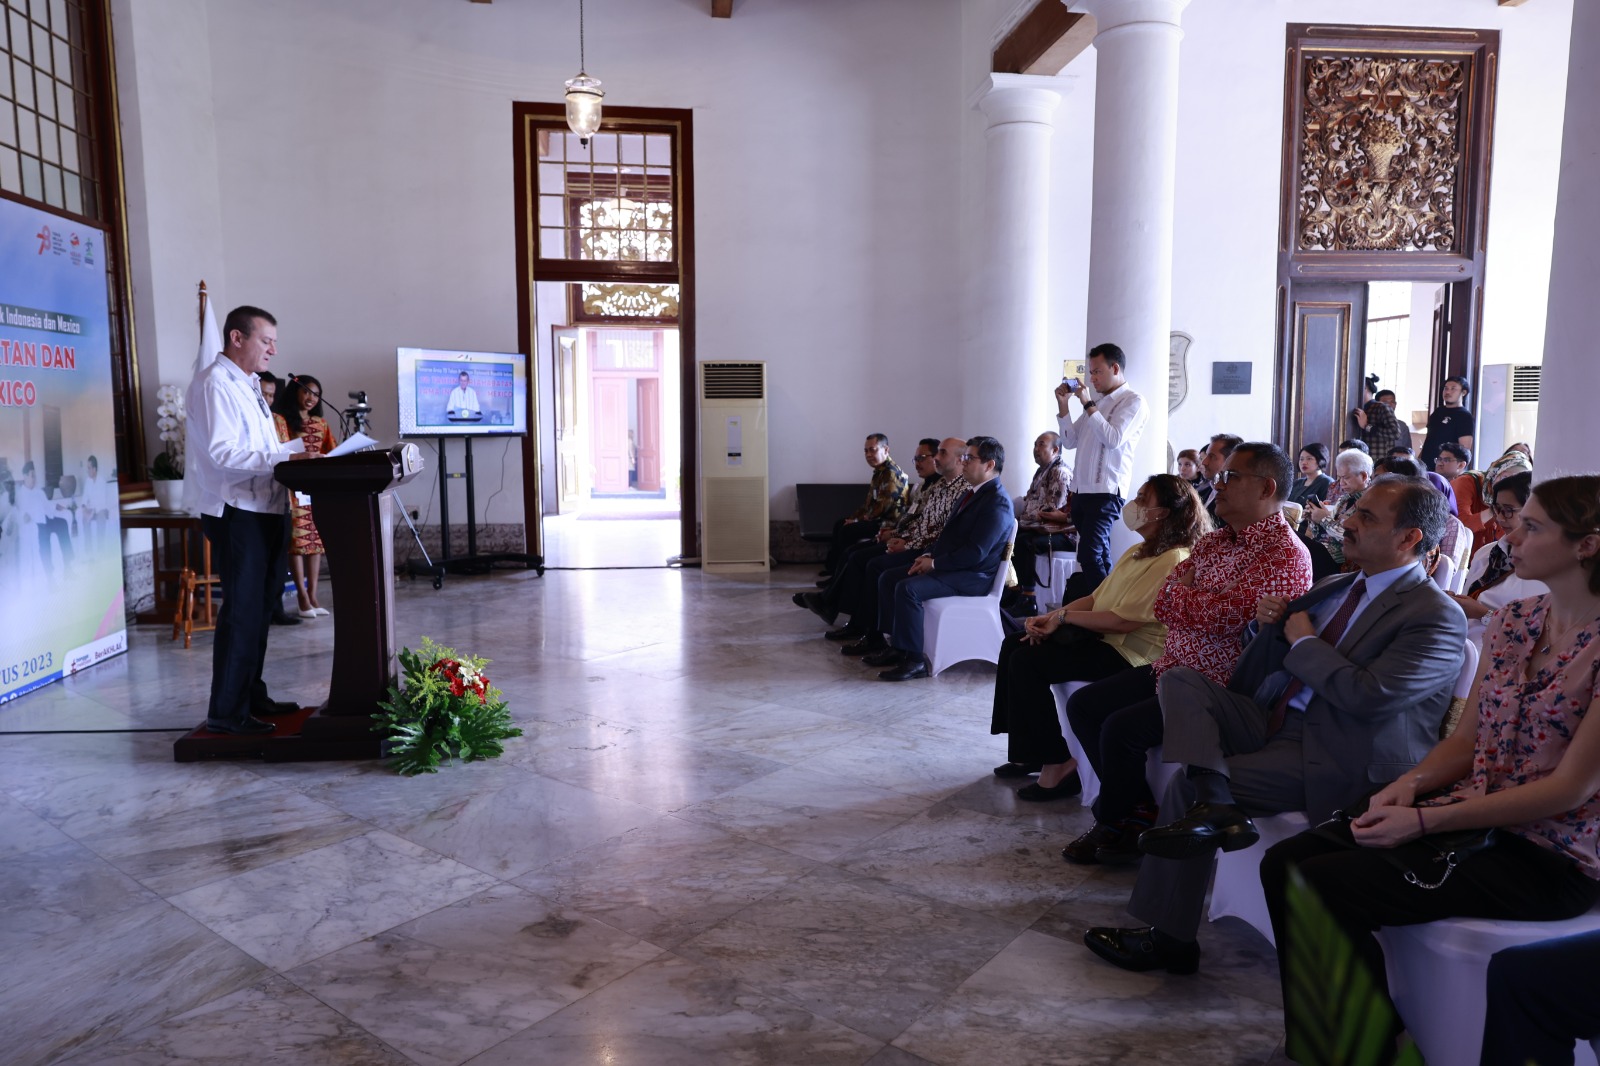 ANRI dan Kedubes Meksiko di RI Gelar Pameran Arsip dan Seminar Panorama 70 Tahun Persahabatan dan Kerja Sama Indonesia-Meksiko